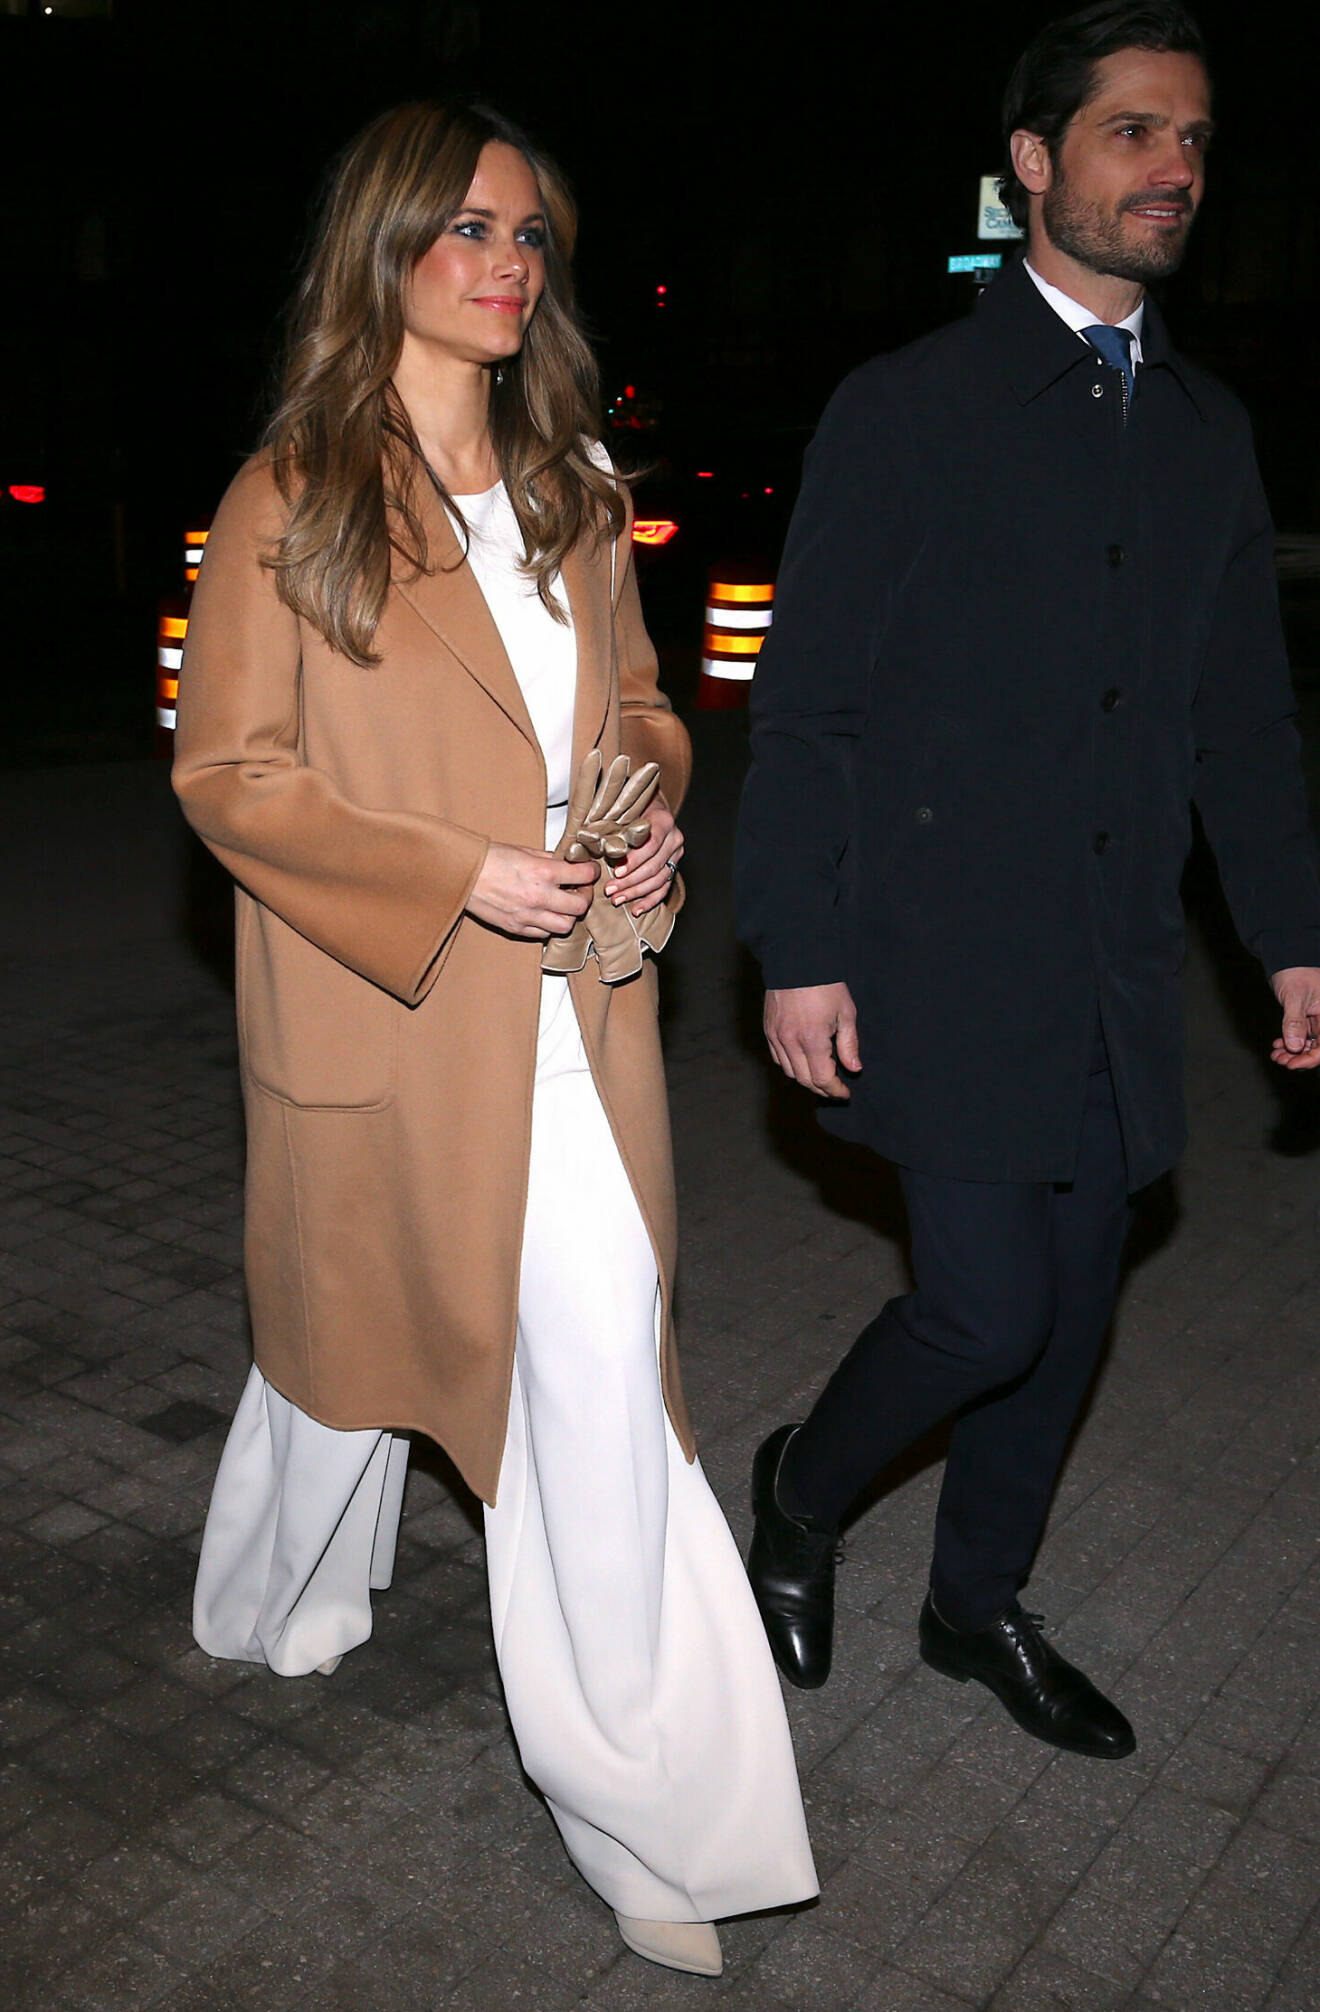 Prinsessan Sofia och Prins Carl Philip på uppdrag på Manhattan